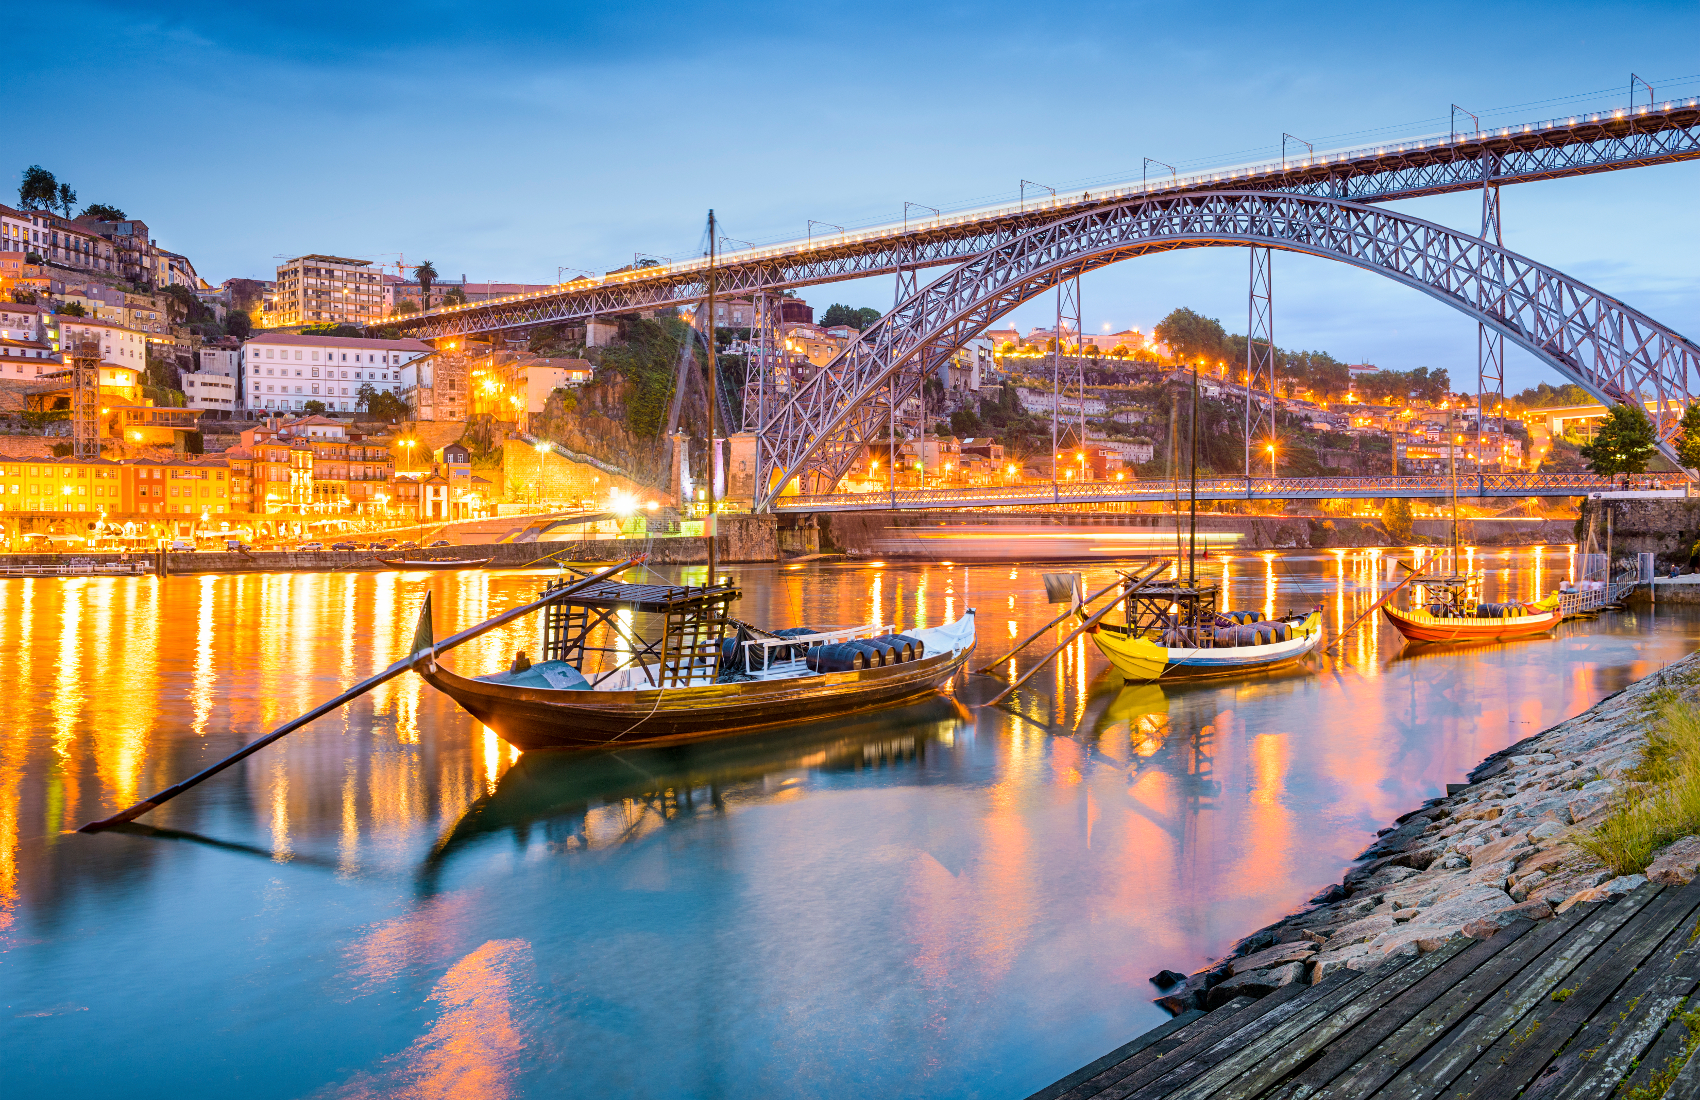 hương trình định cư Golden Visa do chính phủ Bồ Đào Nha triển khai với mục đích tạo điều kiện nhanh chóng cho các nhà đầu tư ngoài EU được cấp quy chế định cư hợp pháp tại quốc gia này. Chương trình có hiệu lực từ ngày 08 tháng 10 năm 2012.